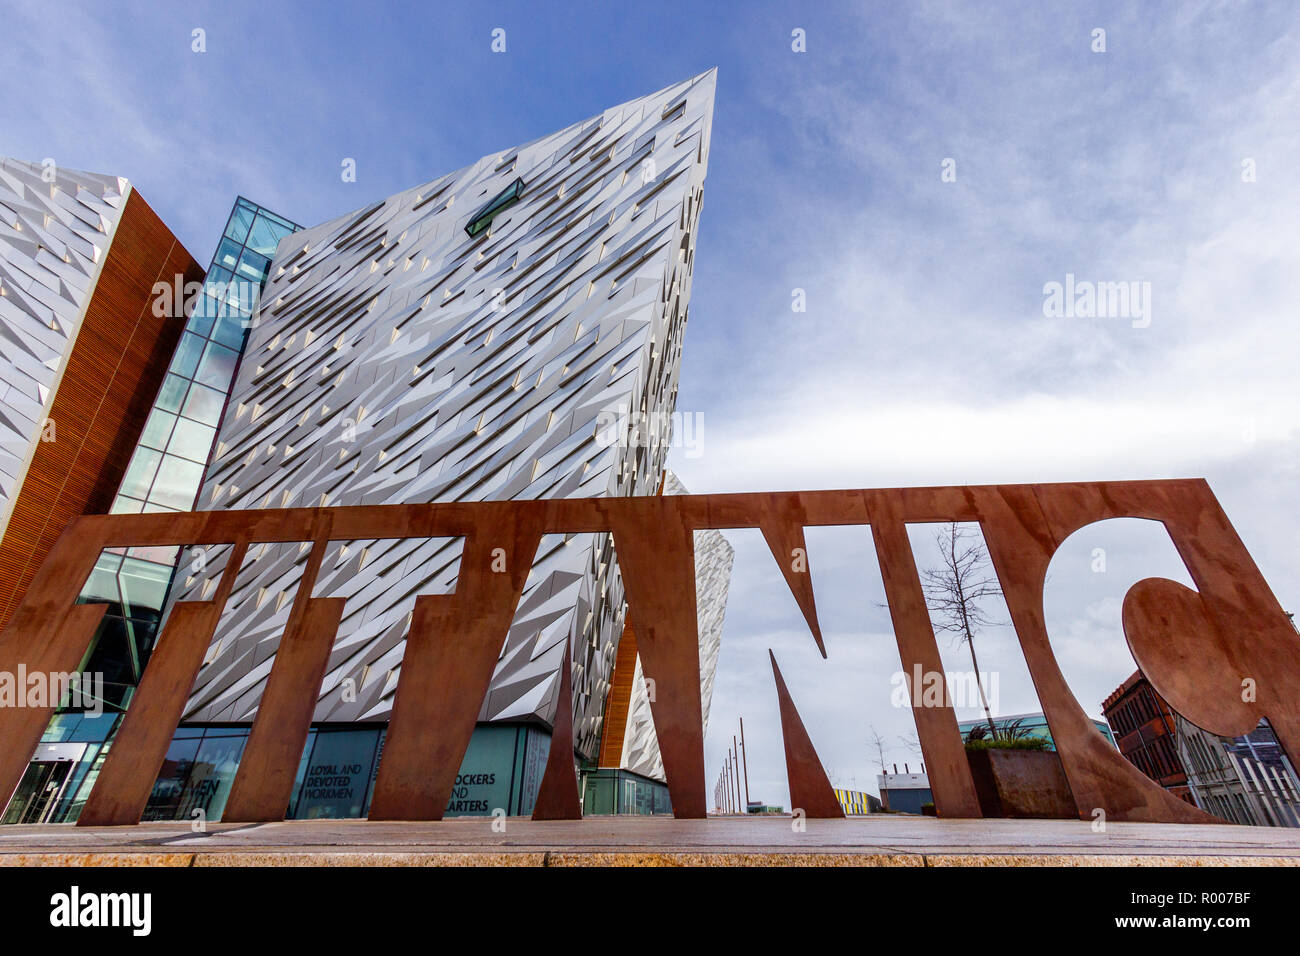 BELFAST, Nordirland - Feb 9, 2014: Titanic Belfast Besucher Attraktion und ein Denkmal. Stockfoto